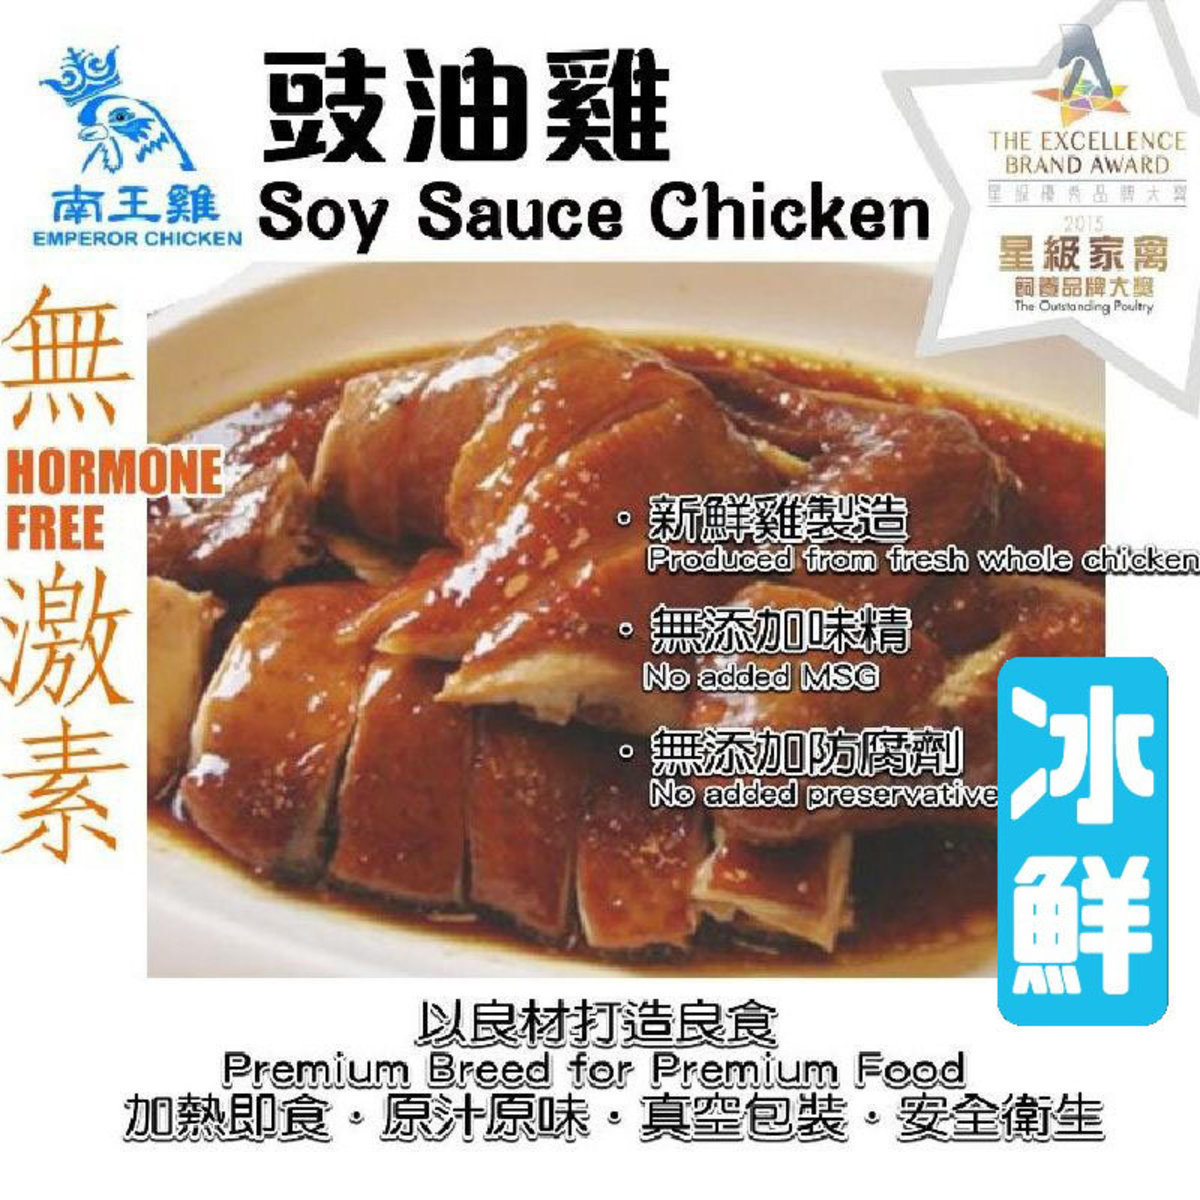 粵皇雞 南王雞 豉油雞 冷凍食品0 4 C 全隻 香港電視hktvmall 網上購物